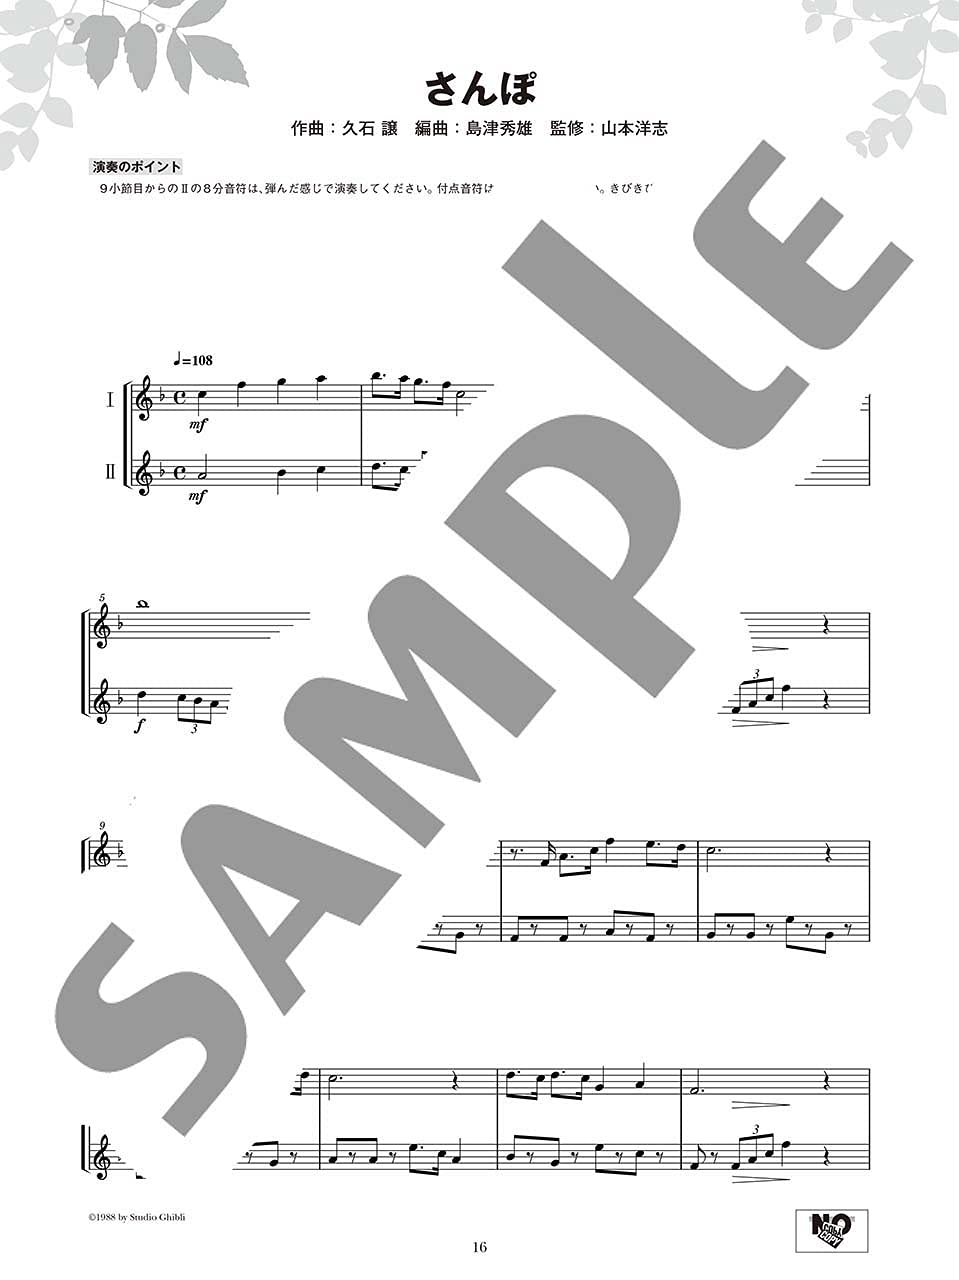 Ensemble de Ghibli: Studio Ghibli for Clarinet Ensemble(Pre-Intermediate) Sheet Music Book